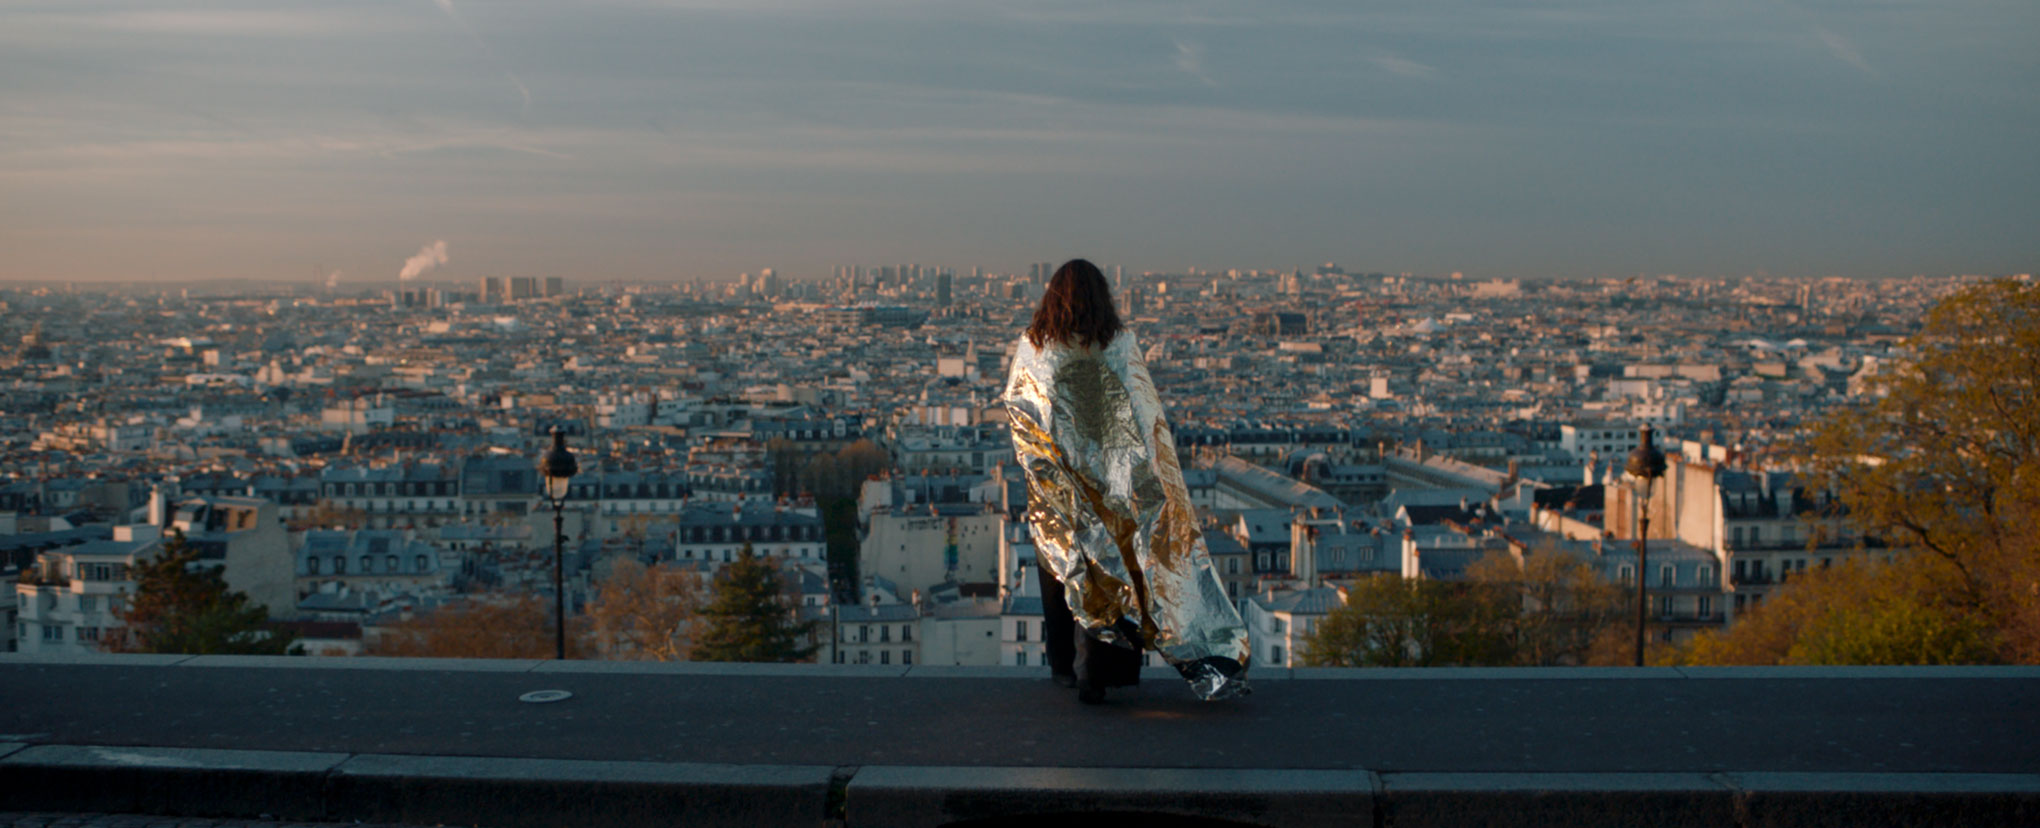 Sotto le stelle di Parigi recensione film di Claus Drexel con Catherine Frot